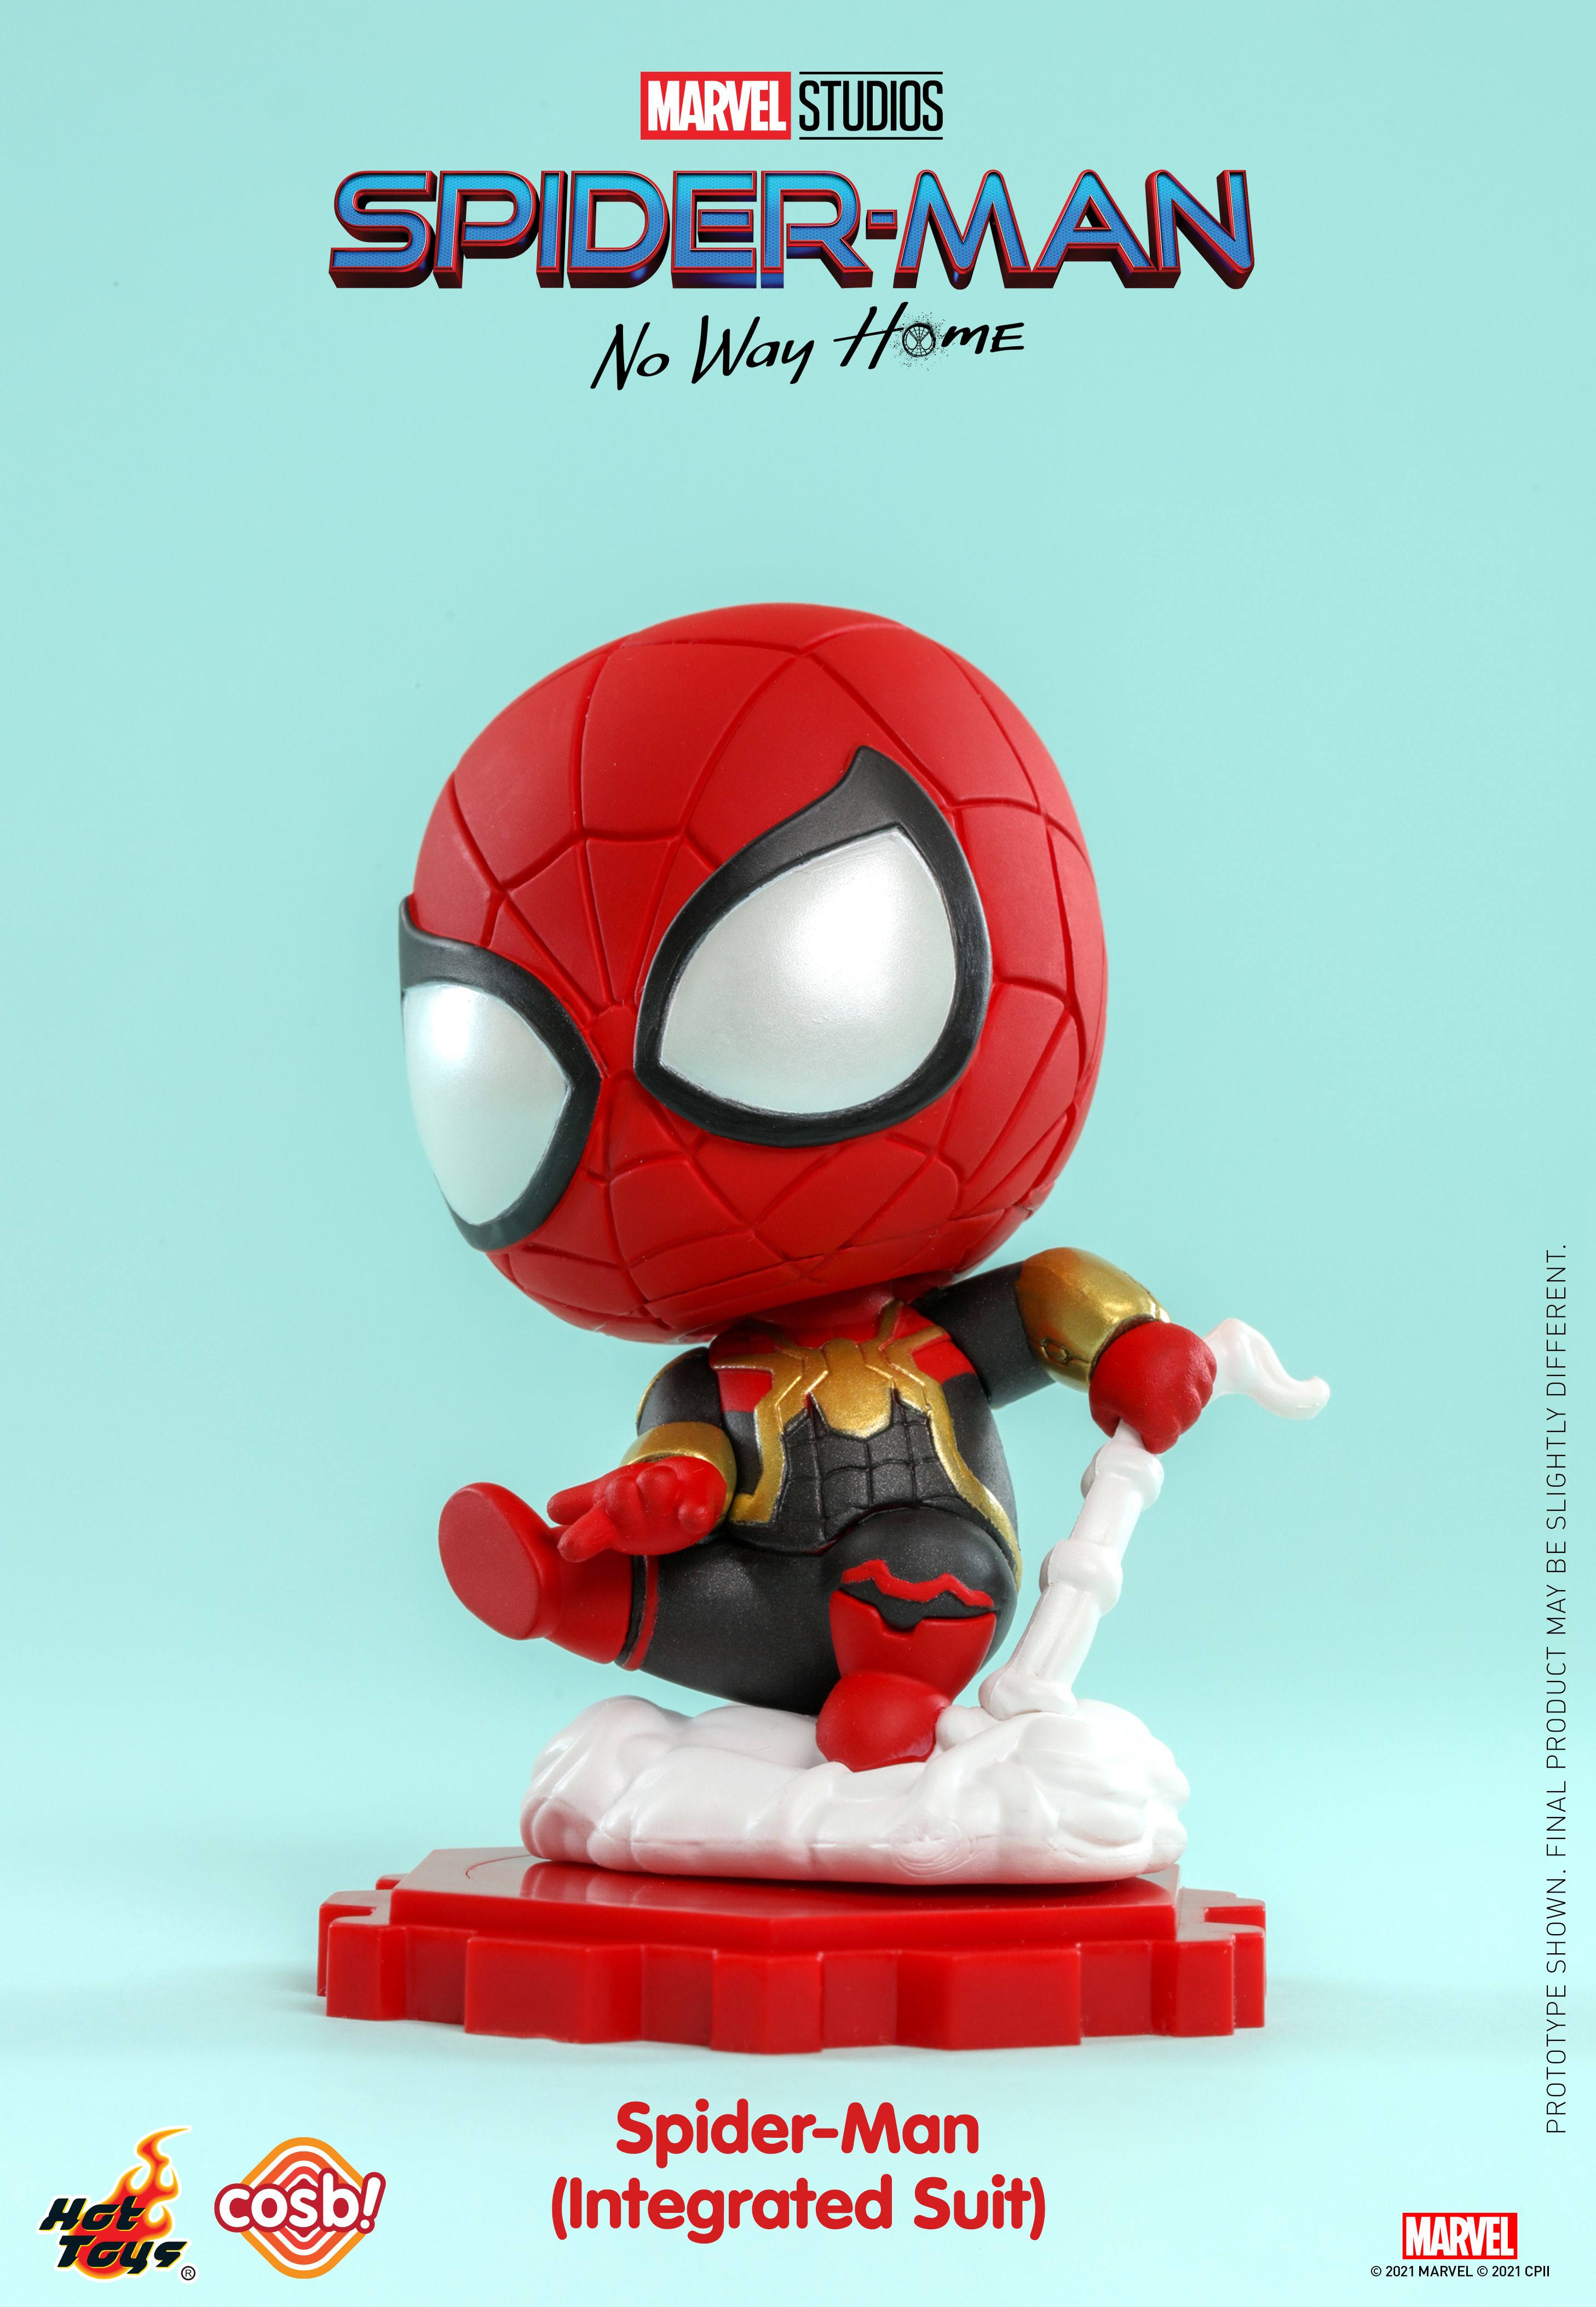 Hot Toys - Spider-Man - No Way Home Cosbi_PR7